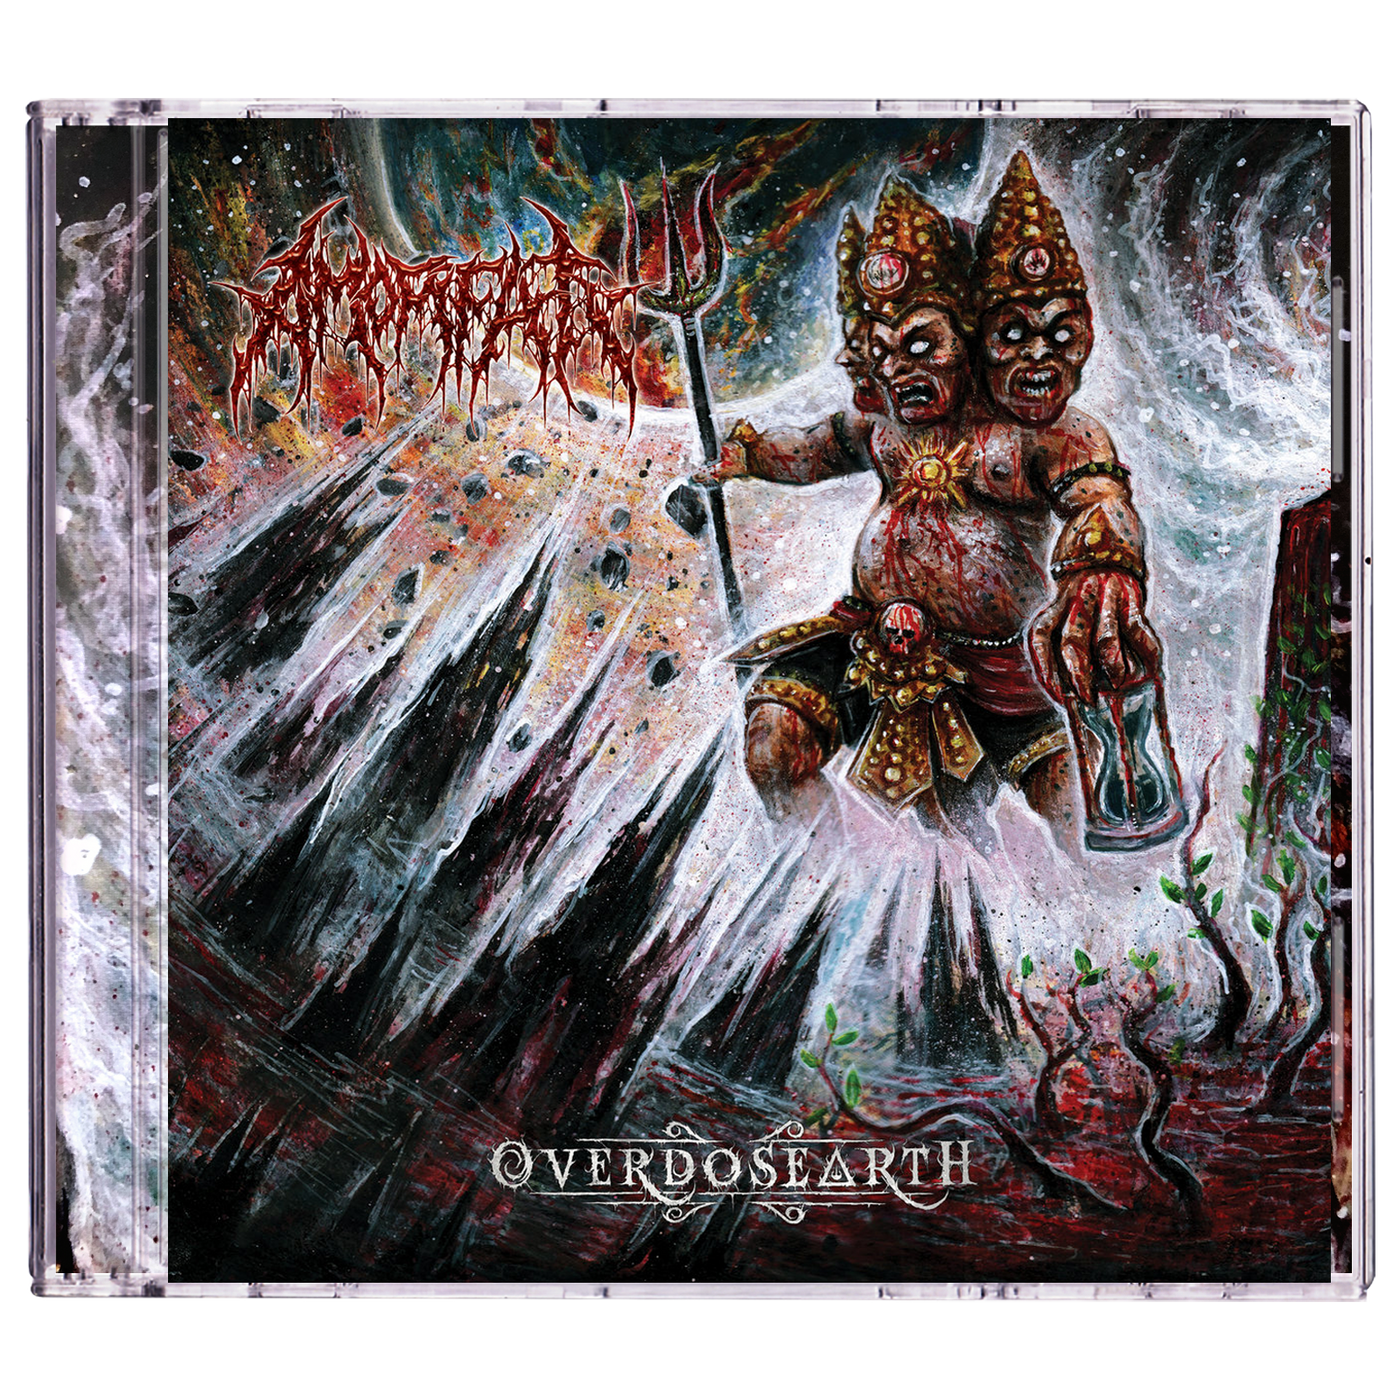 Amorfati 'Overdosearth' CD